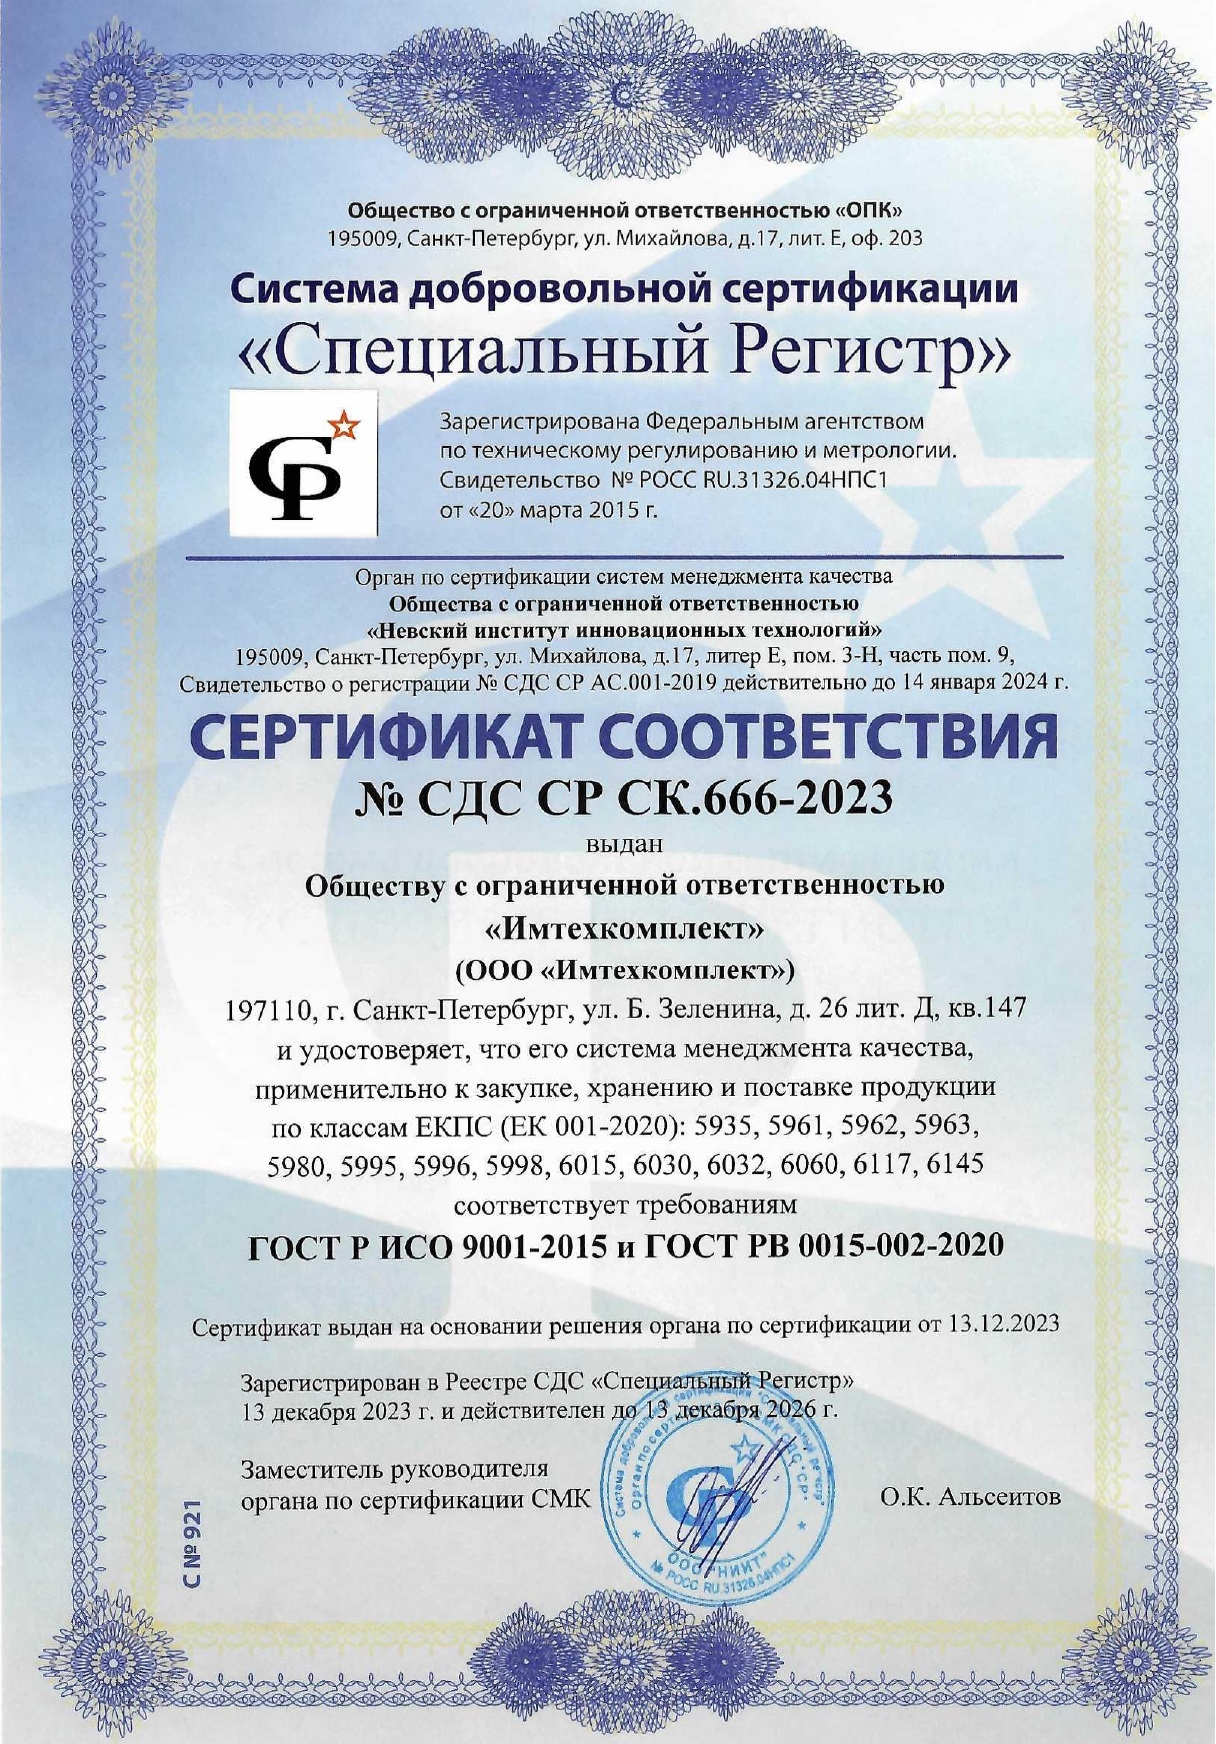 Сертификат ИМТЕХ для поставки военной продукции